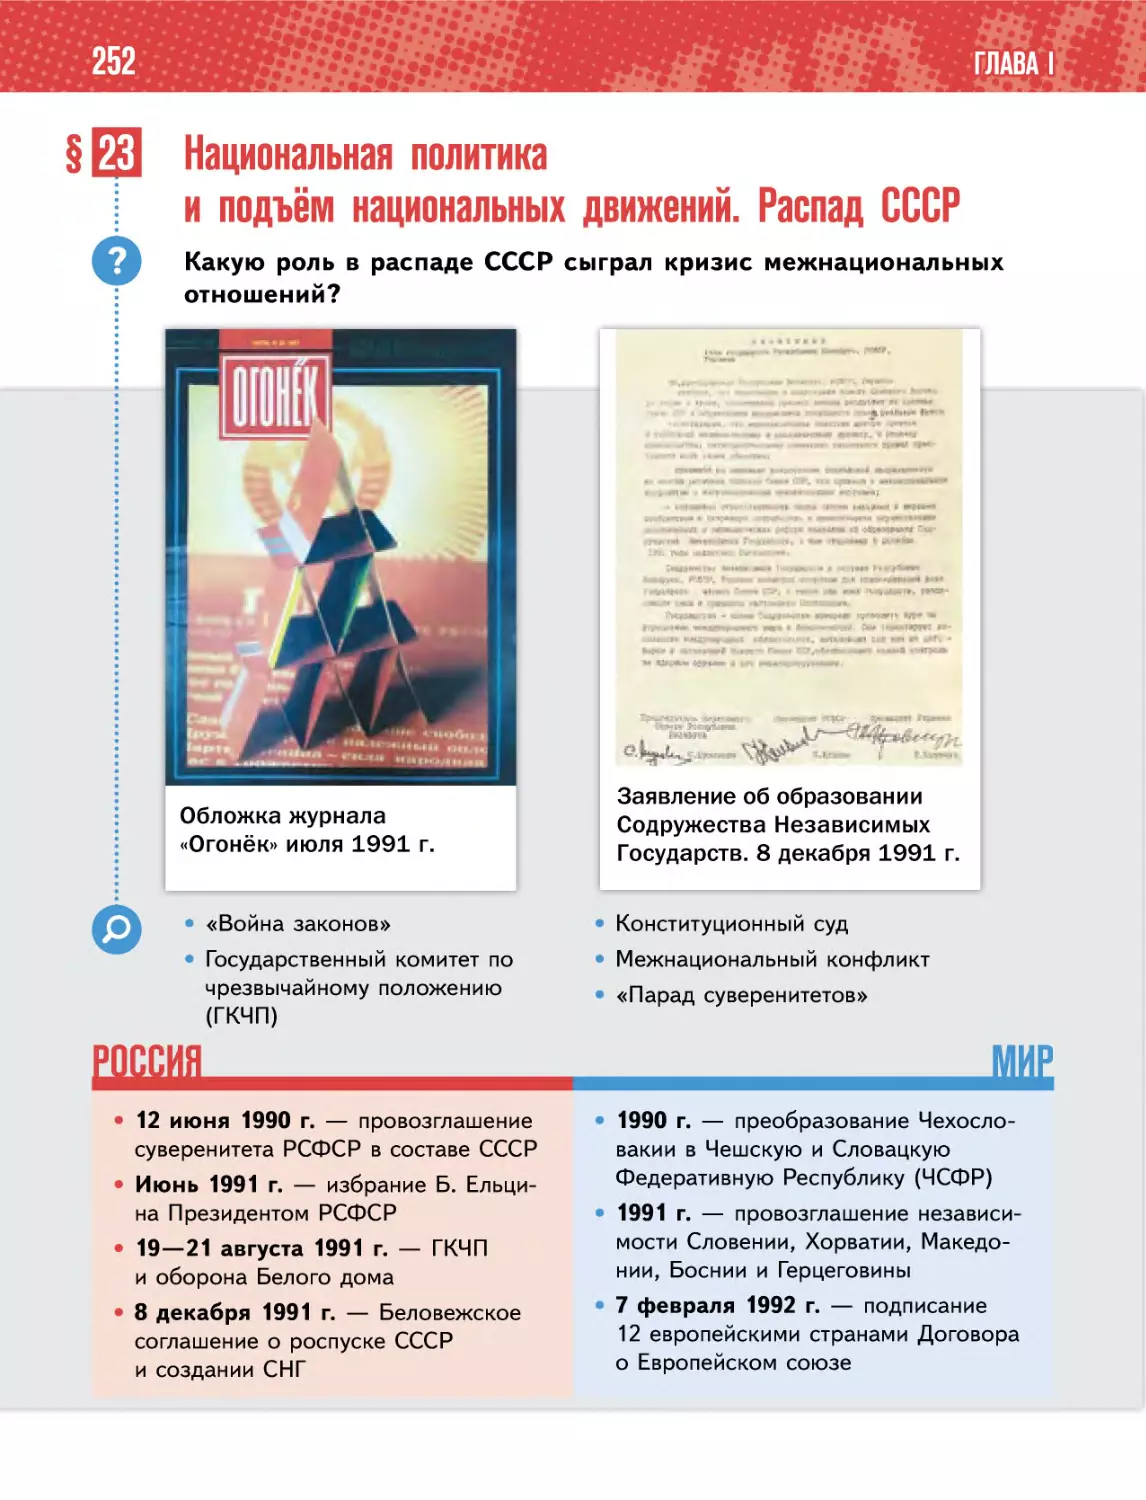 § 23 Национальная политикаи подъём национальных движений. Распад СССР